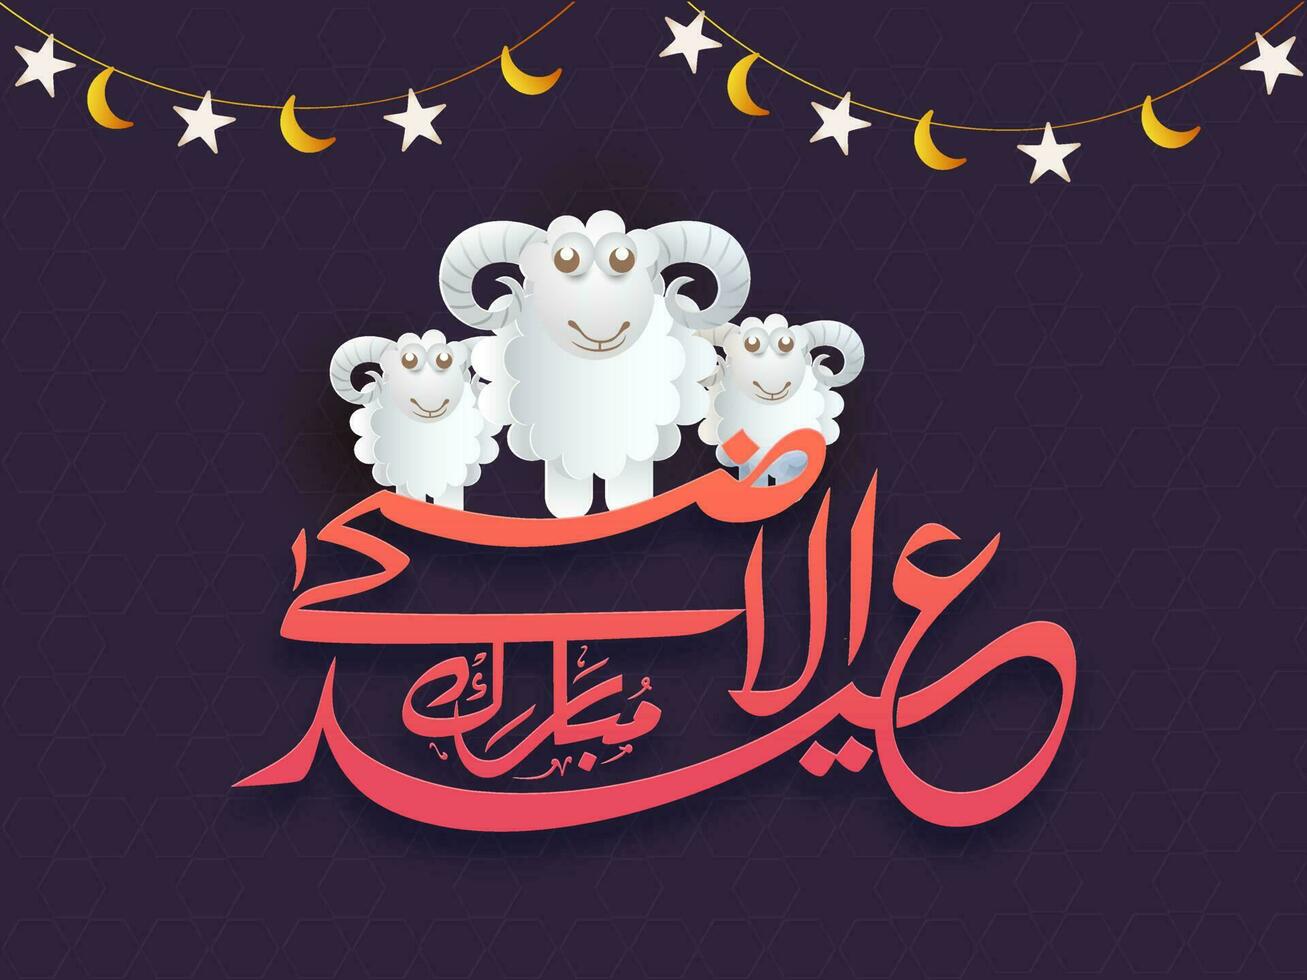 retro estilo poster ou bandeira Projeto. desenho animado do ovelha com islâmico caligrafia texto do eid-al-adha Mubarak festival. vetor